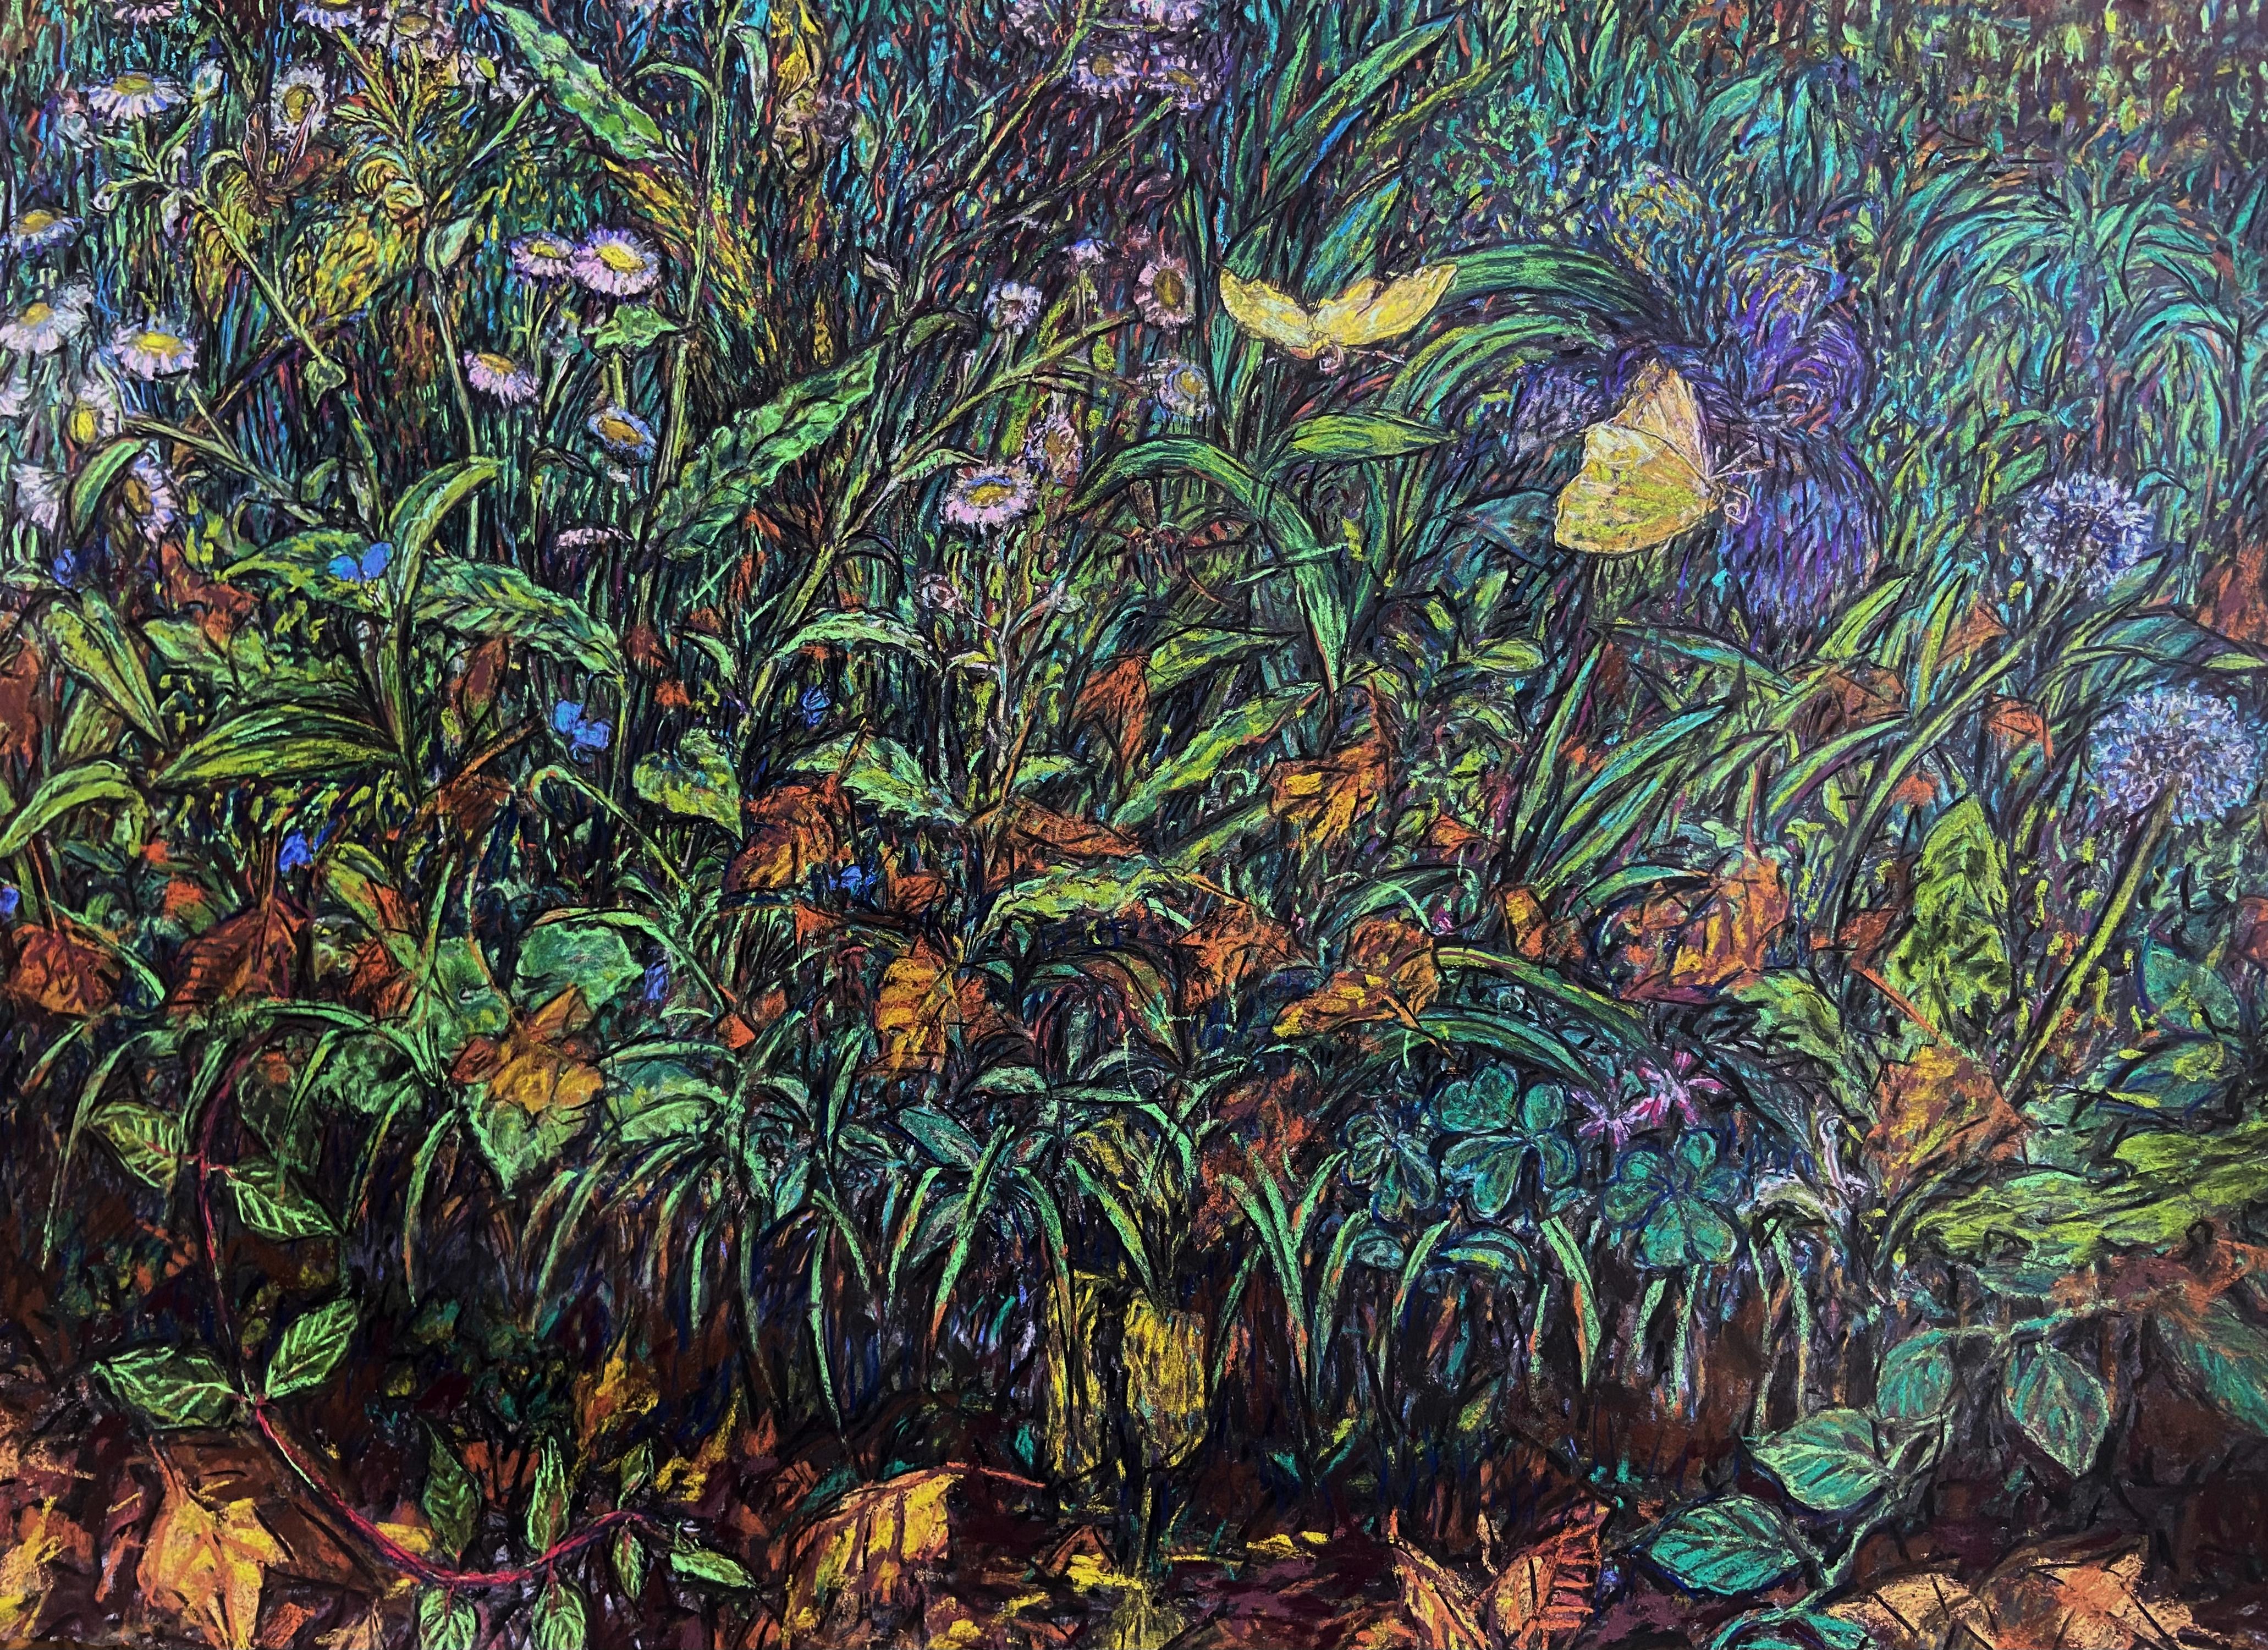 Erin Dixon Landscape Art – "Gelbe Schmetterlinge" - Pastellzeichnung, Natur, Pflanzen, Stillleben, Landschaft